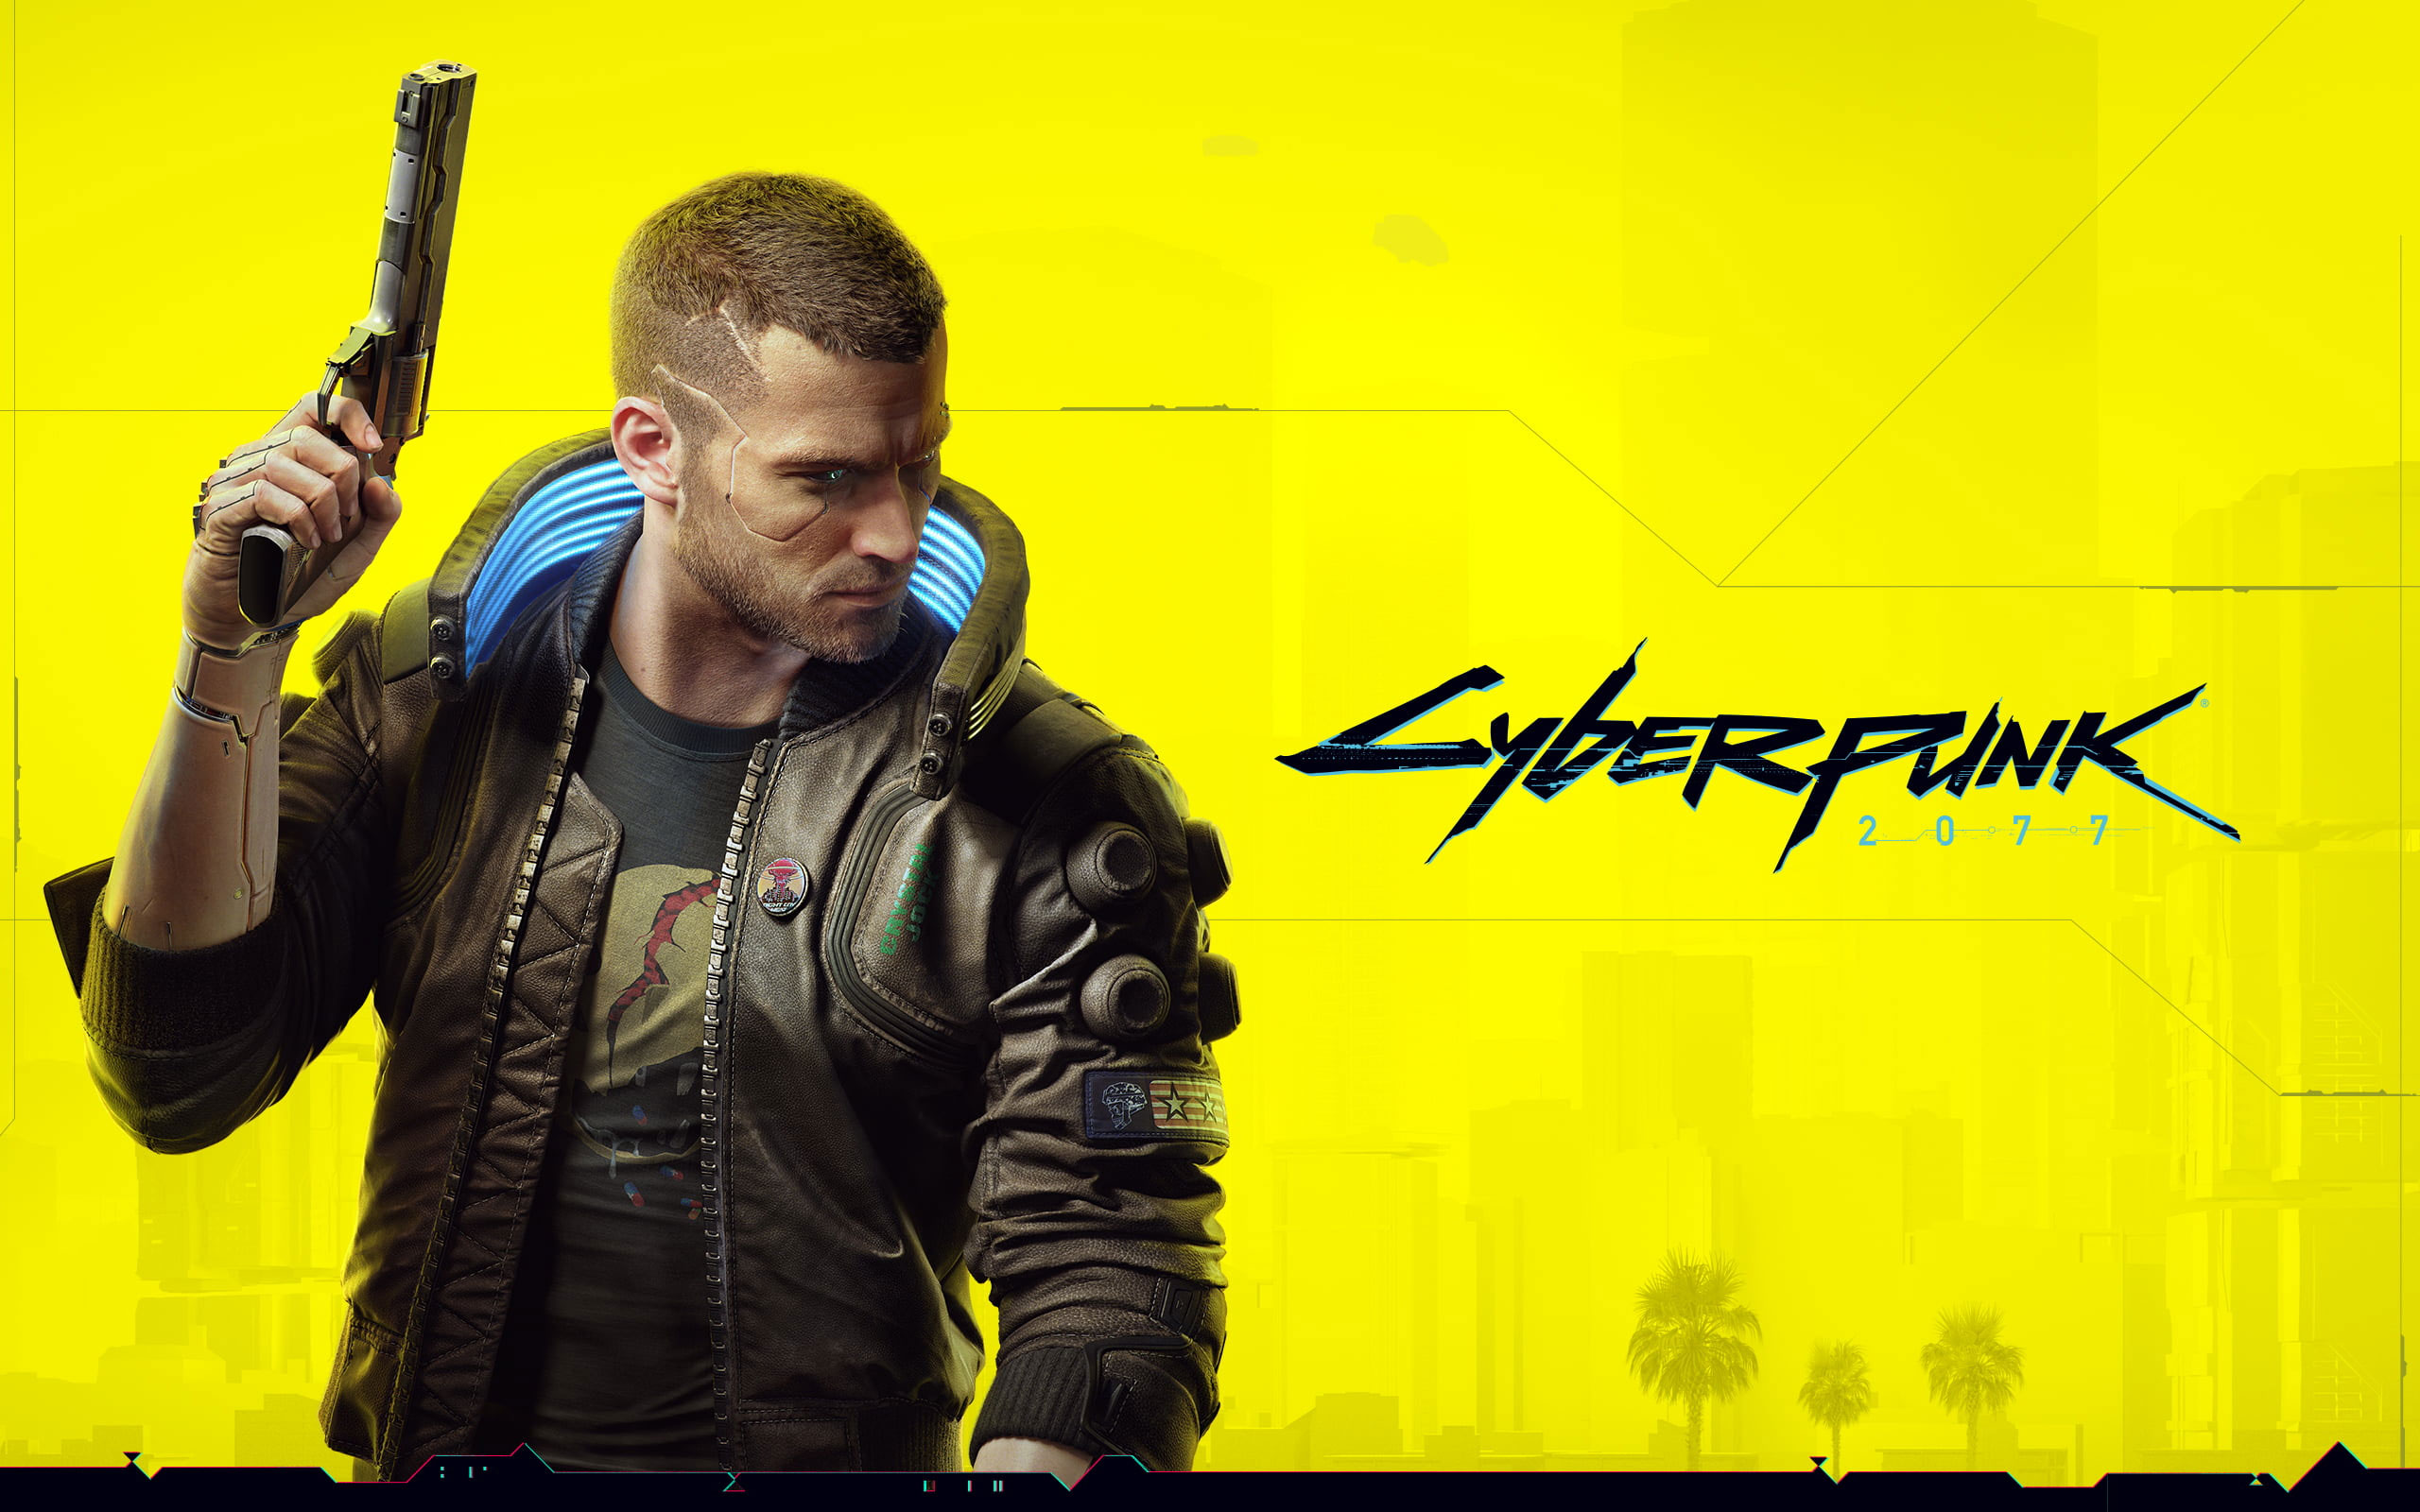 Cyberpunk 2077 wallpaper, video games, gun, 3D, yellow background, weapon